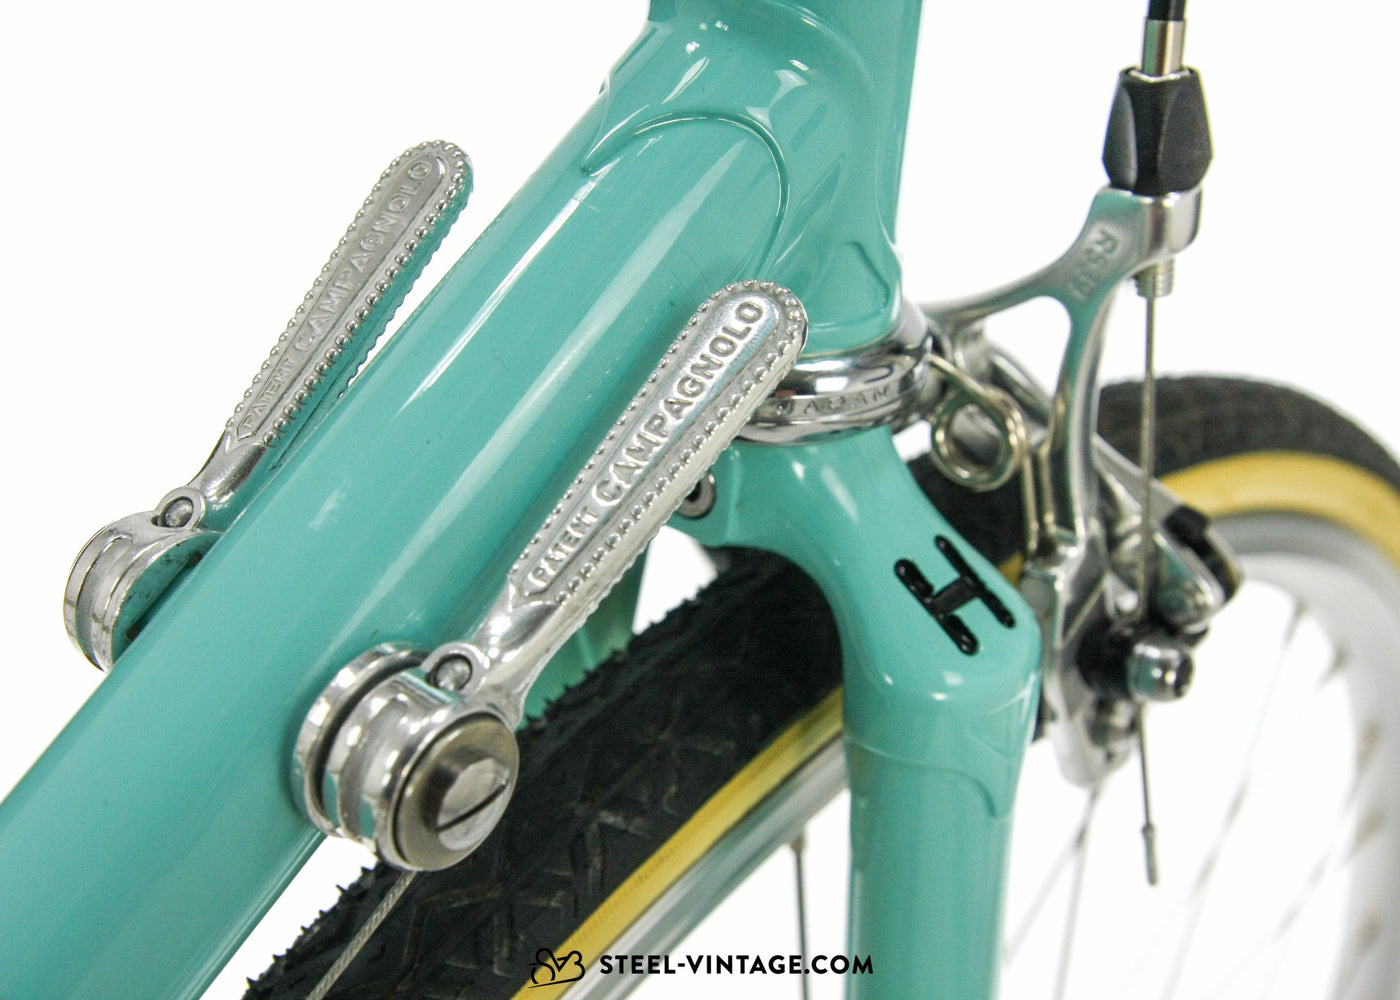 Holdsworth Mistral Eroica Bicycle - Steel Vintage Bikes